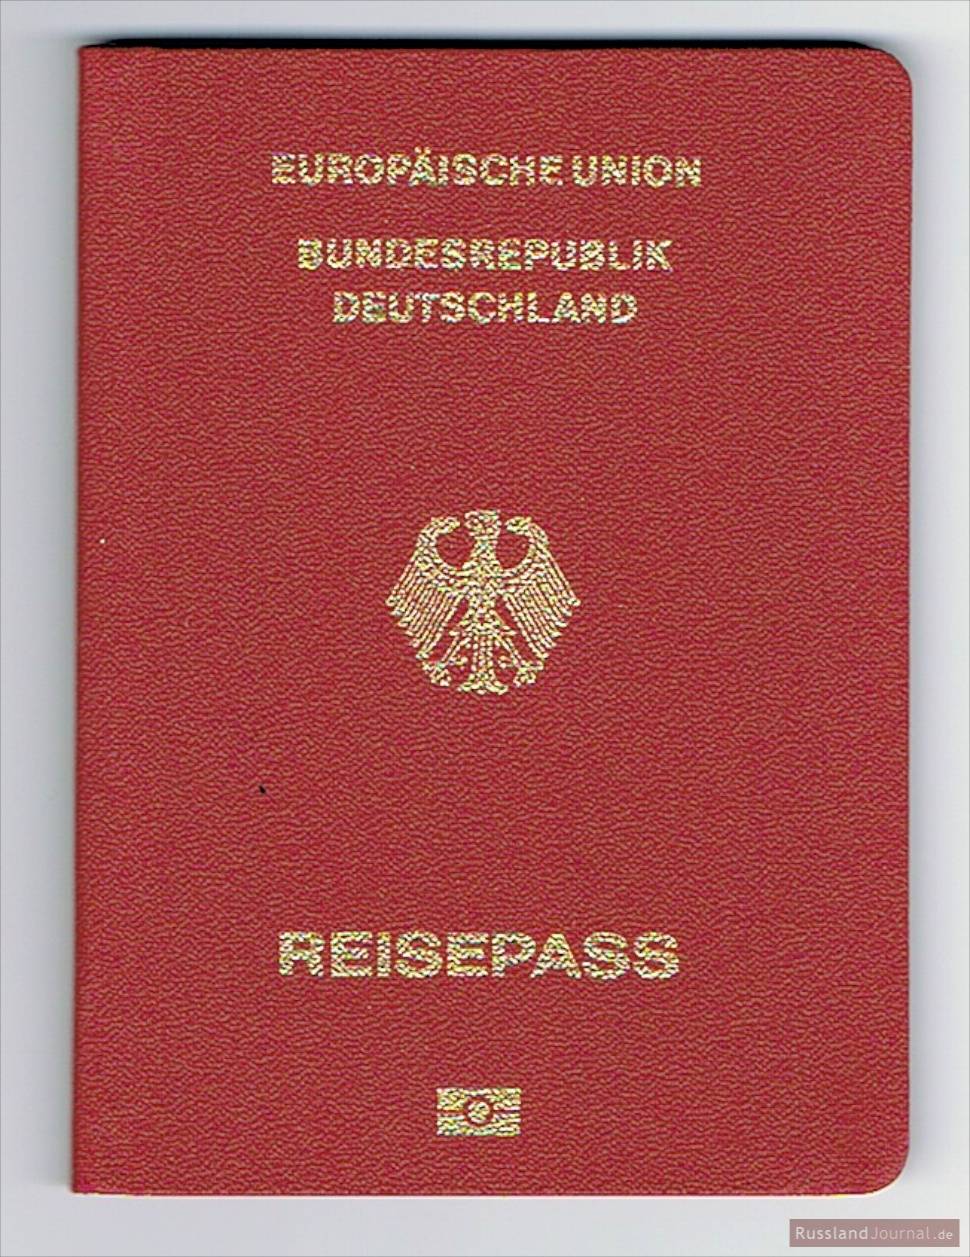 Как получить немецкое гражданство? узнайте из нашей статьи!